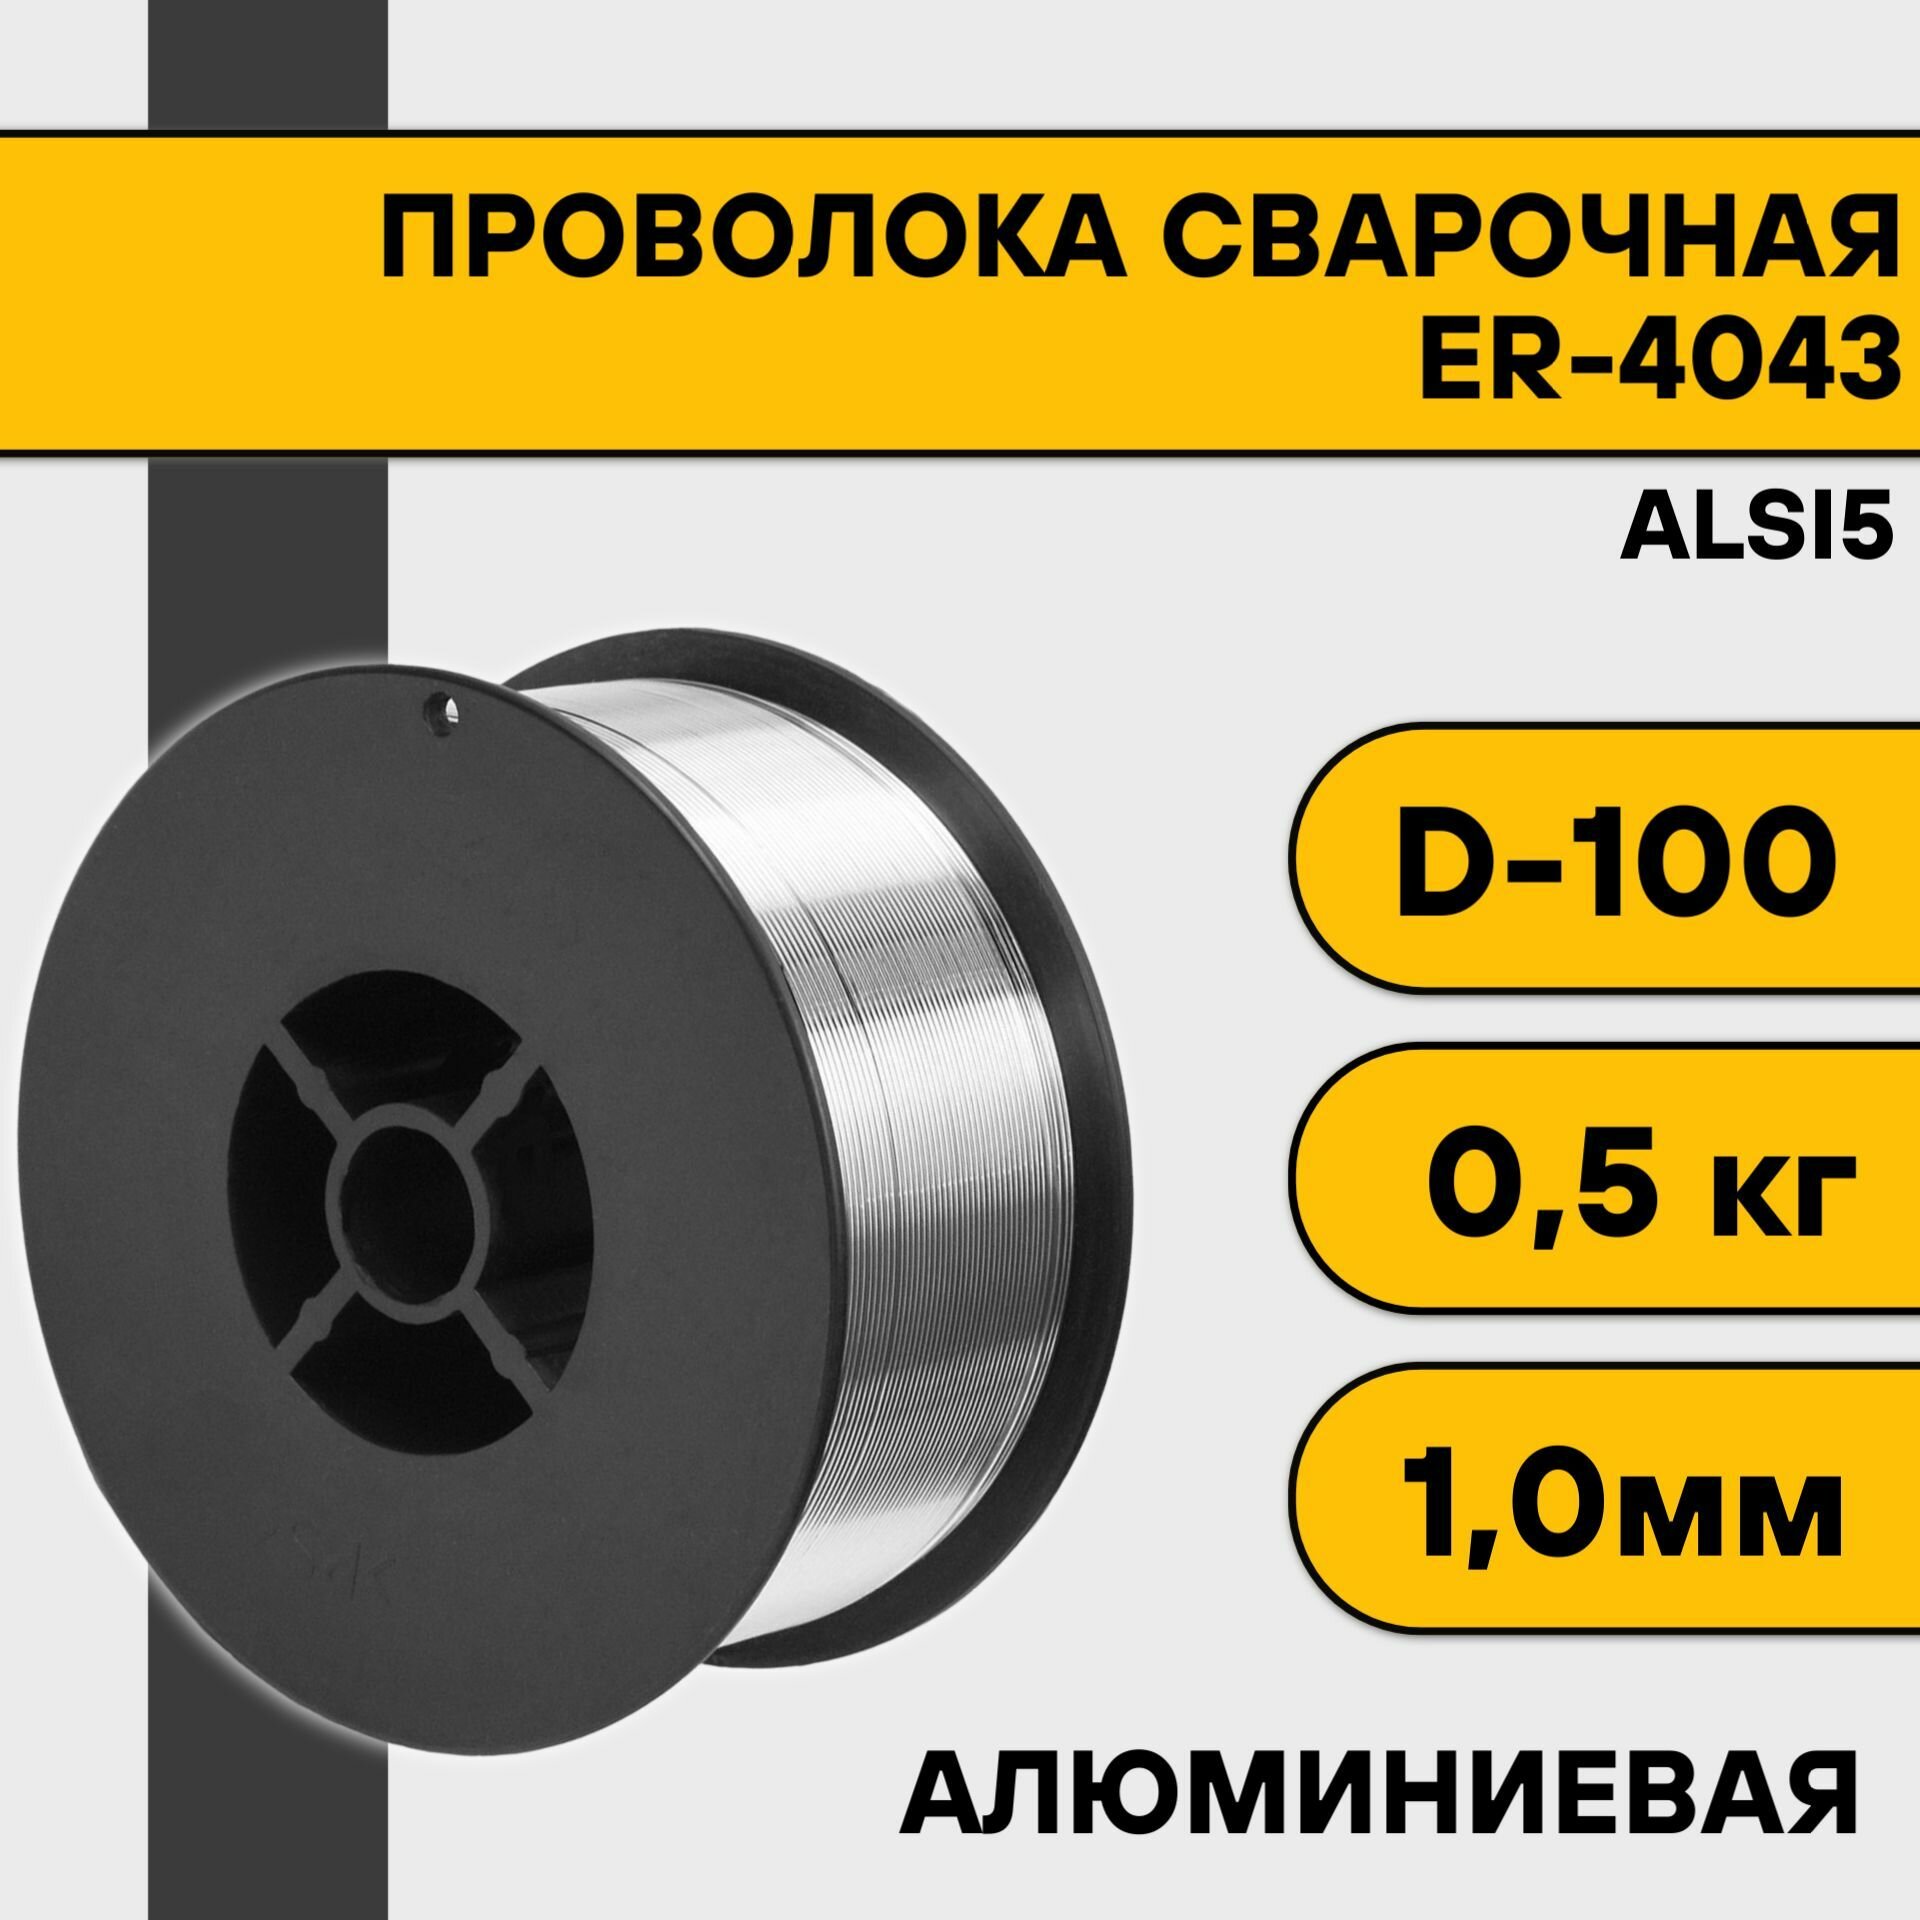 Проволока сварочная ER-4043 (Alsi5) ф 08 мм (2 кг) D-200